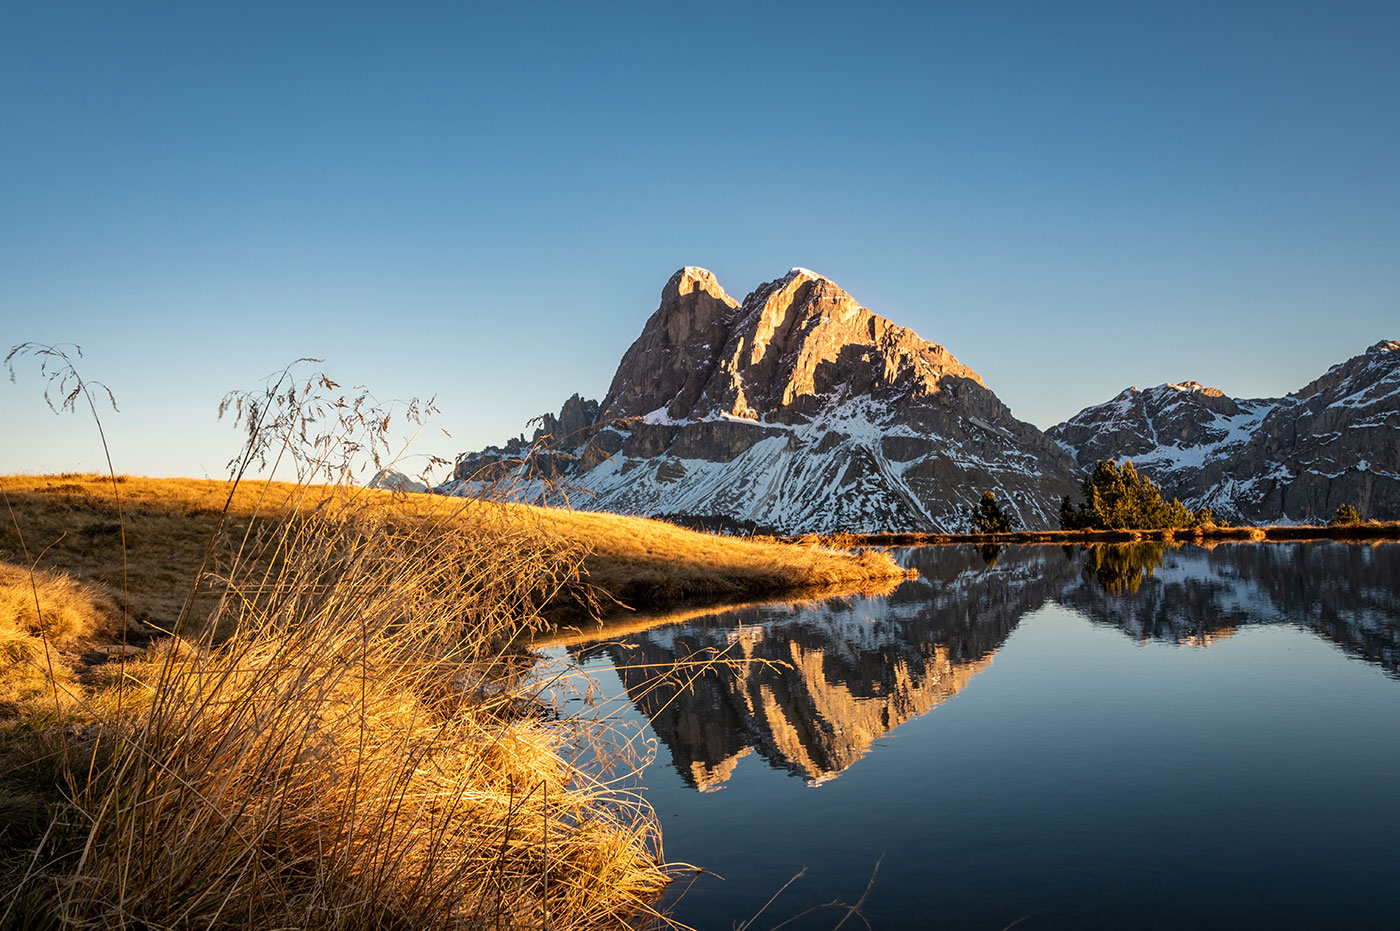 Fotos und Bergbilder aus Südtirol - 360° Bilder | Martin Bacher